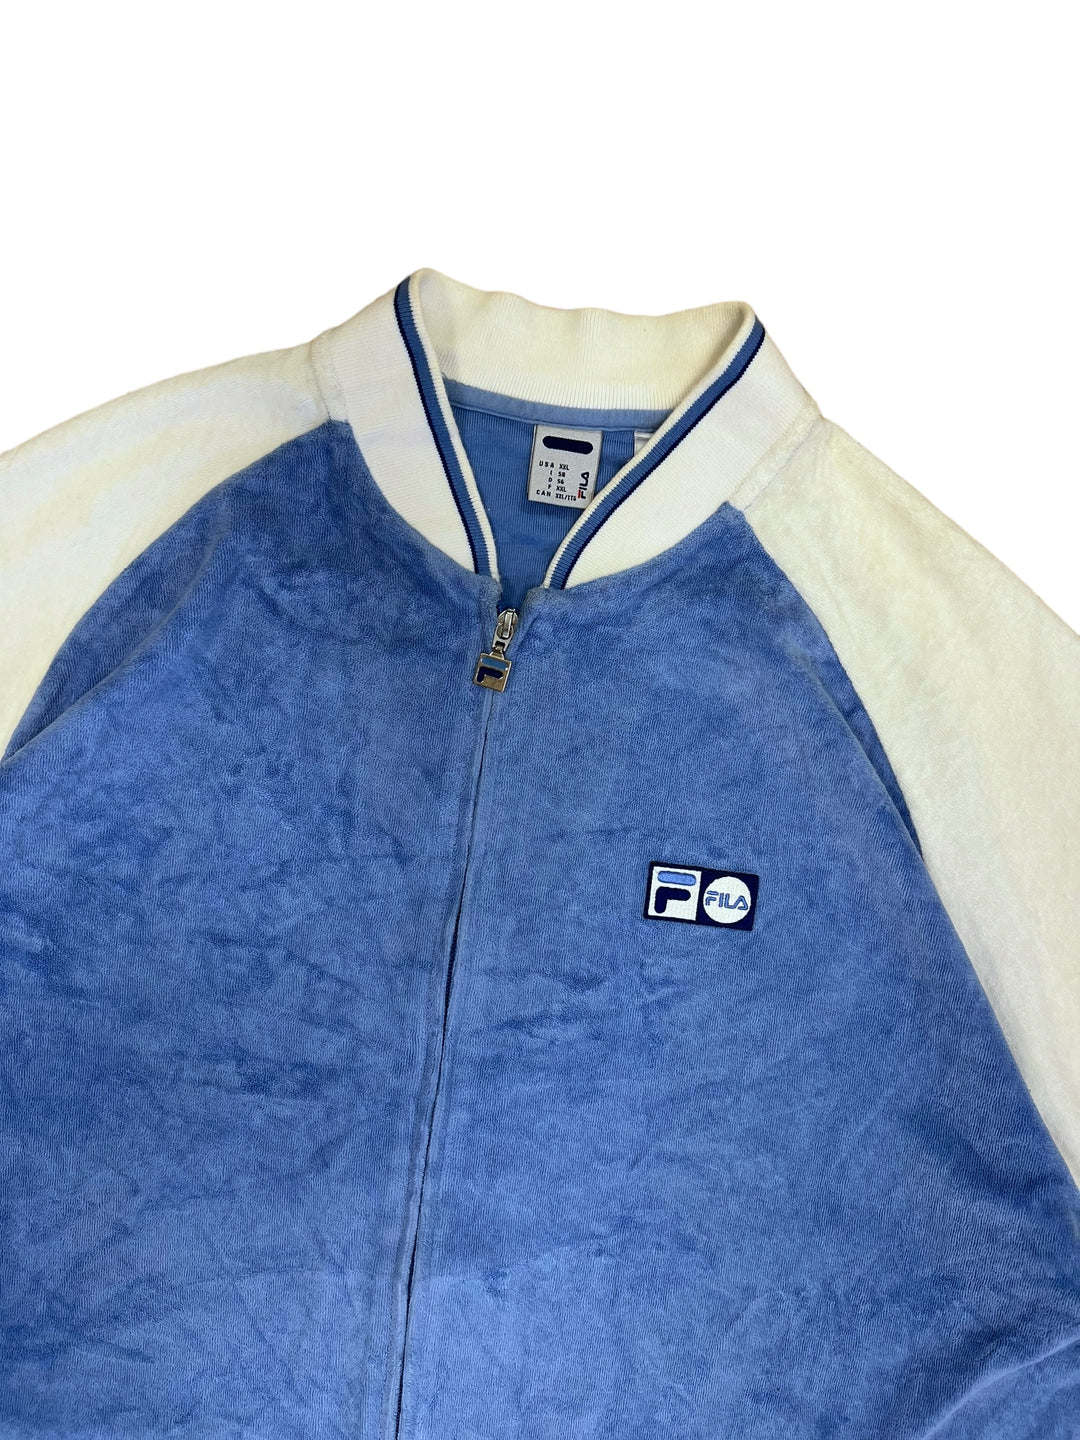 Fila vintage Velour T-shirt jacket men’s XXL